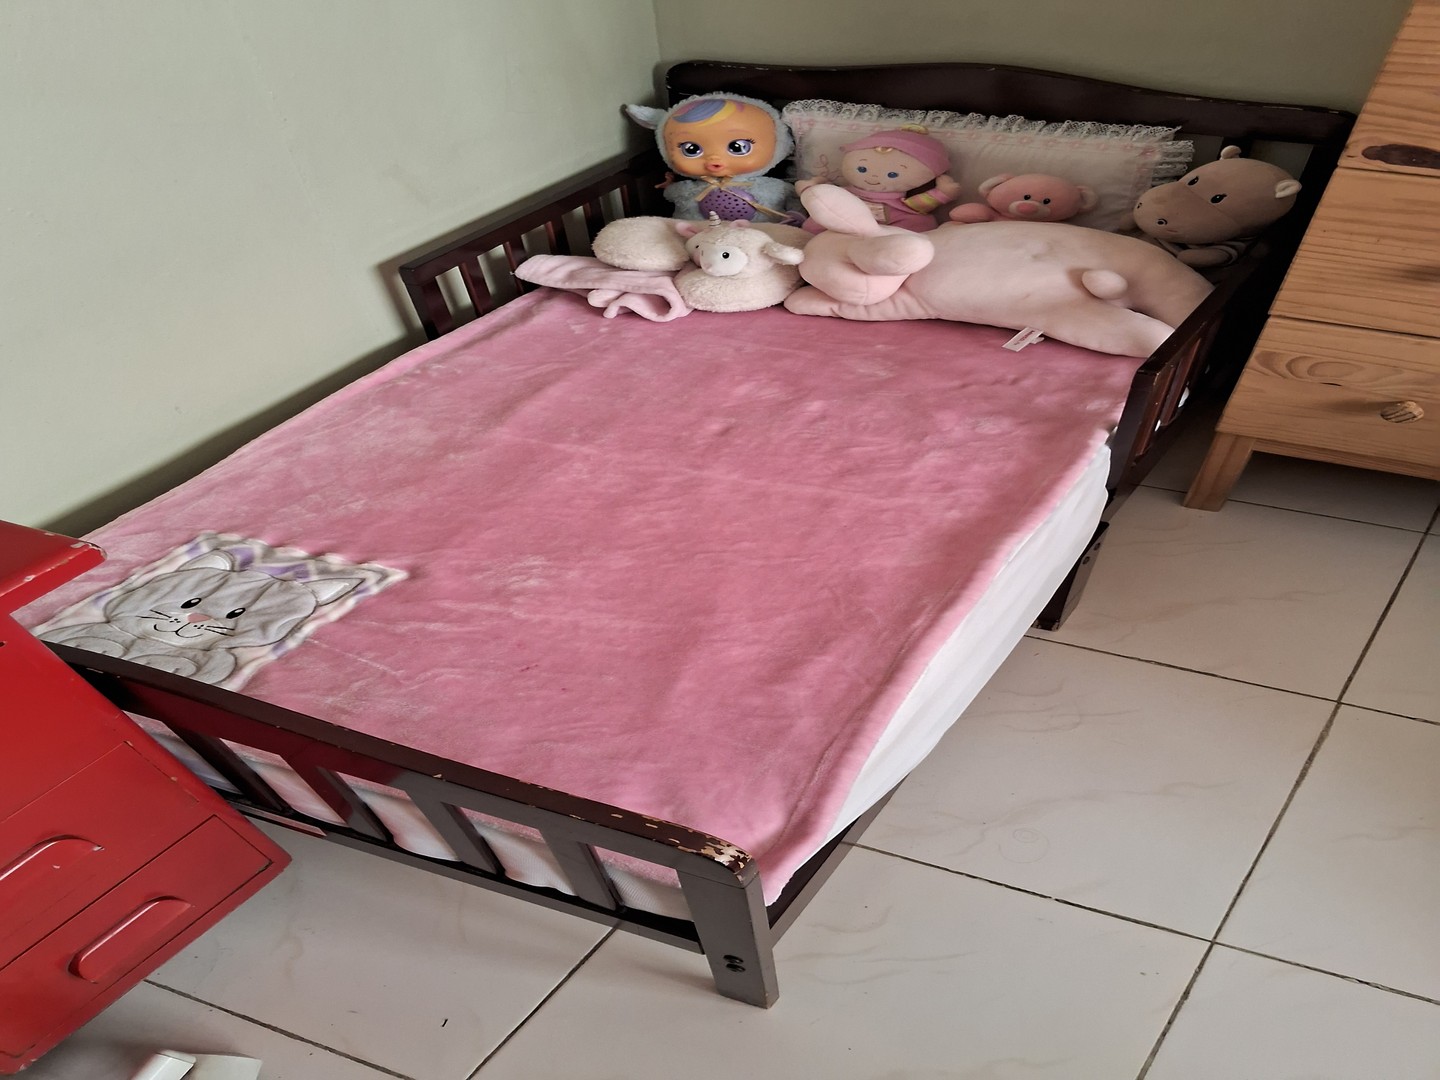 muebles - Vendo cama para niños de 1 a 5 años ( cama todler) con su colchón nuevo incluido